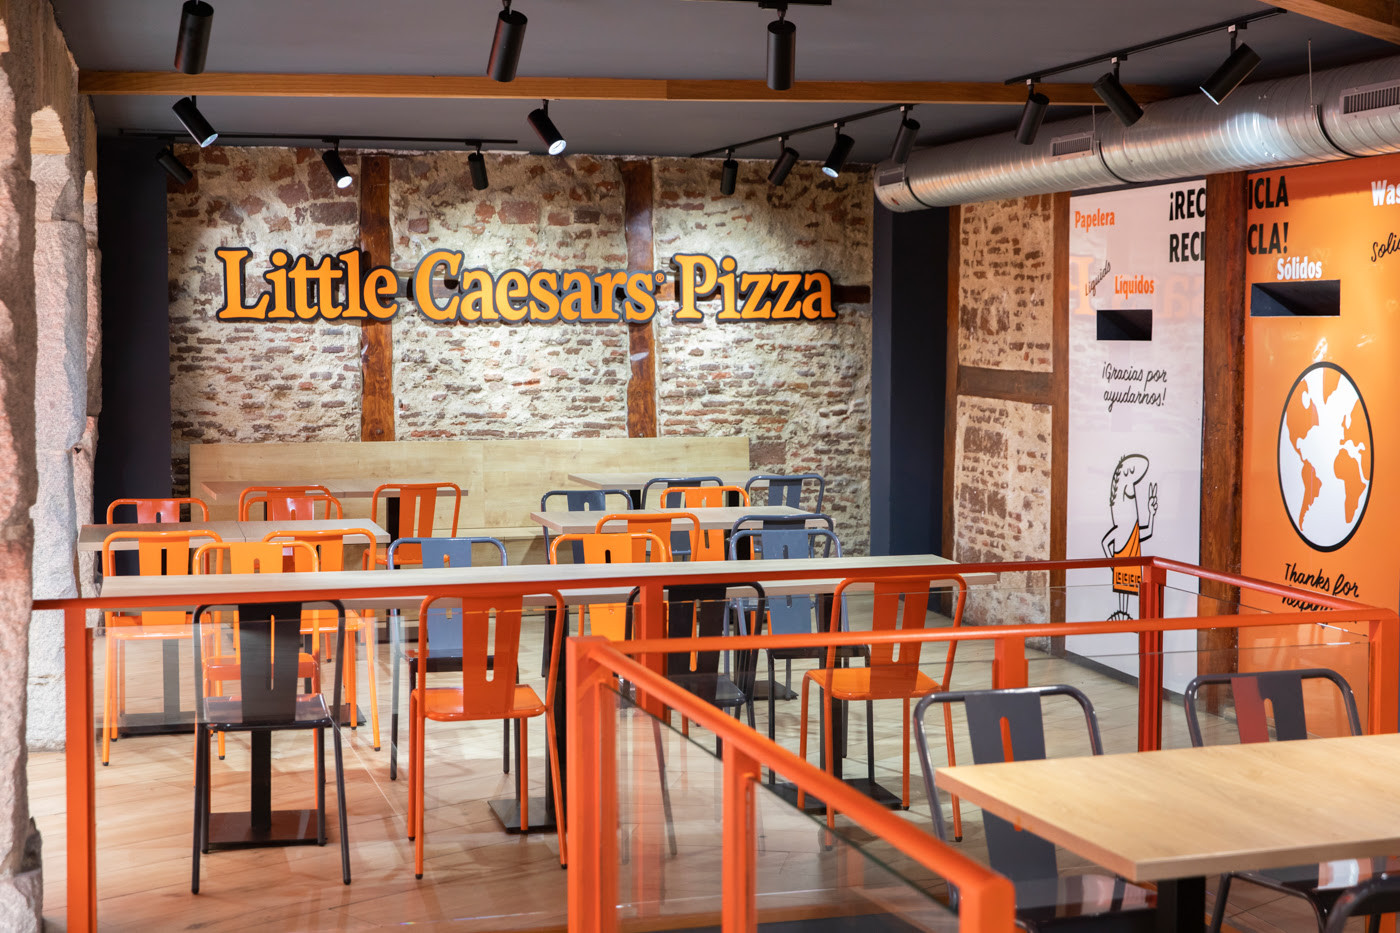 ​Little Caesars pizza continúa creciendo en España con un nuevo local en el corazón de Madrid